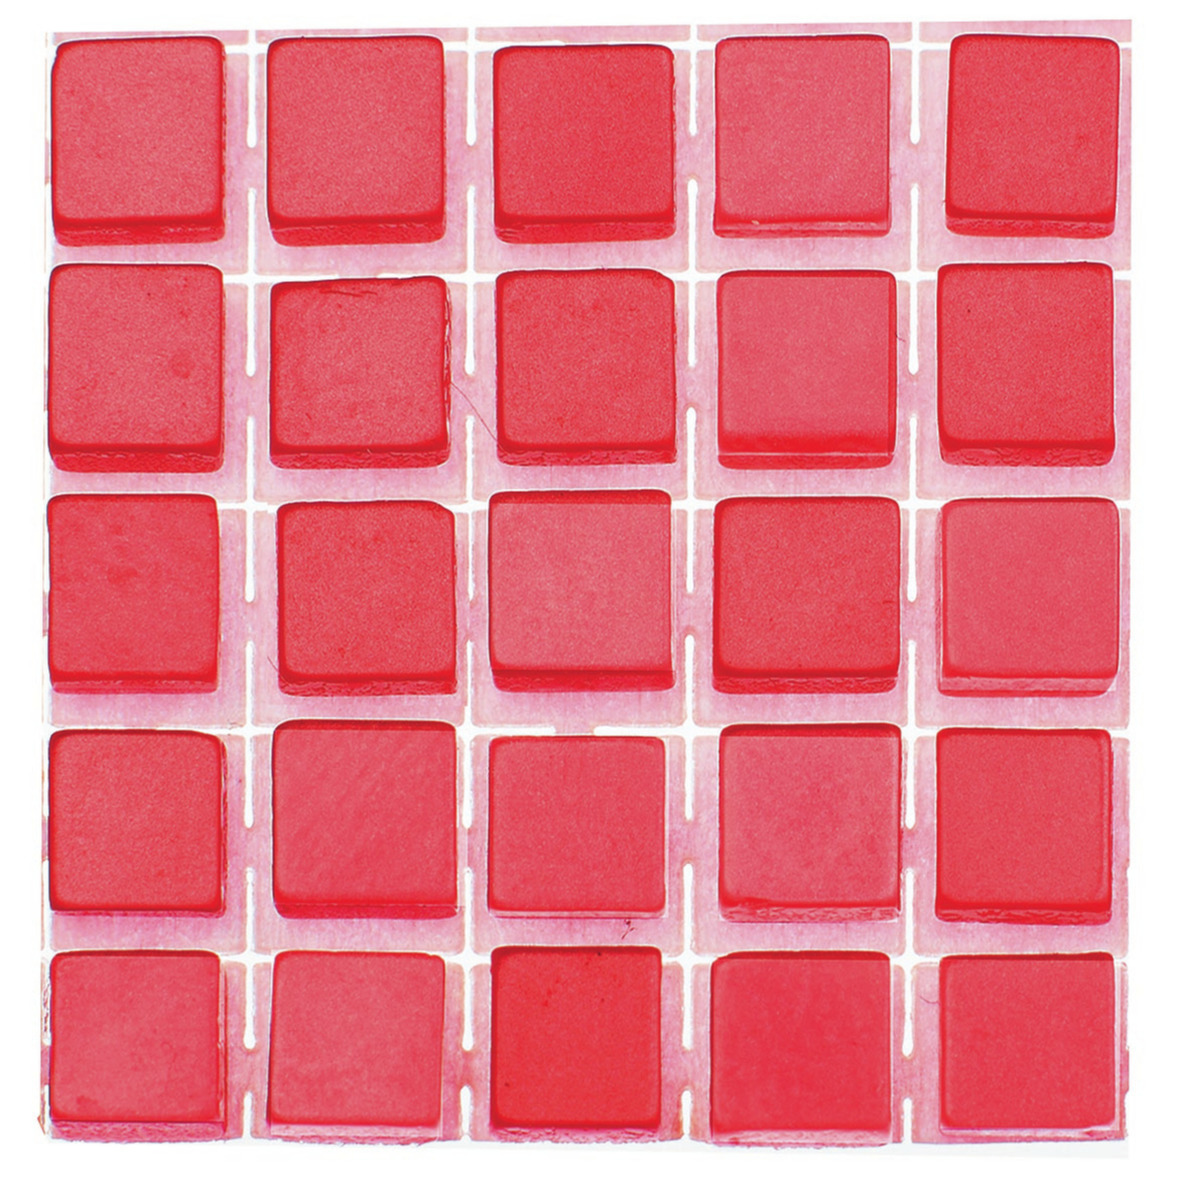 119x stuks mozaieken maken steentjes-tegels kleur rood 0.5 x 0.5 x 0.2 cm